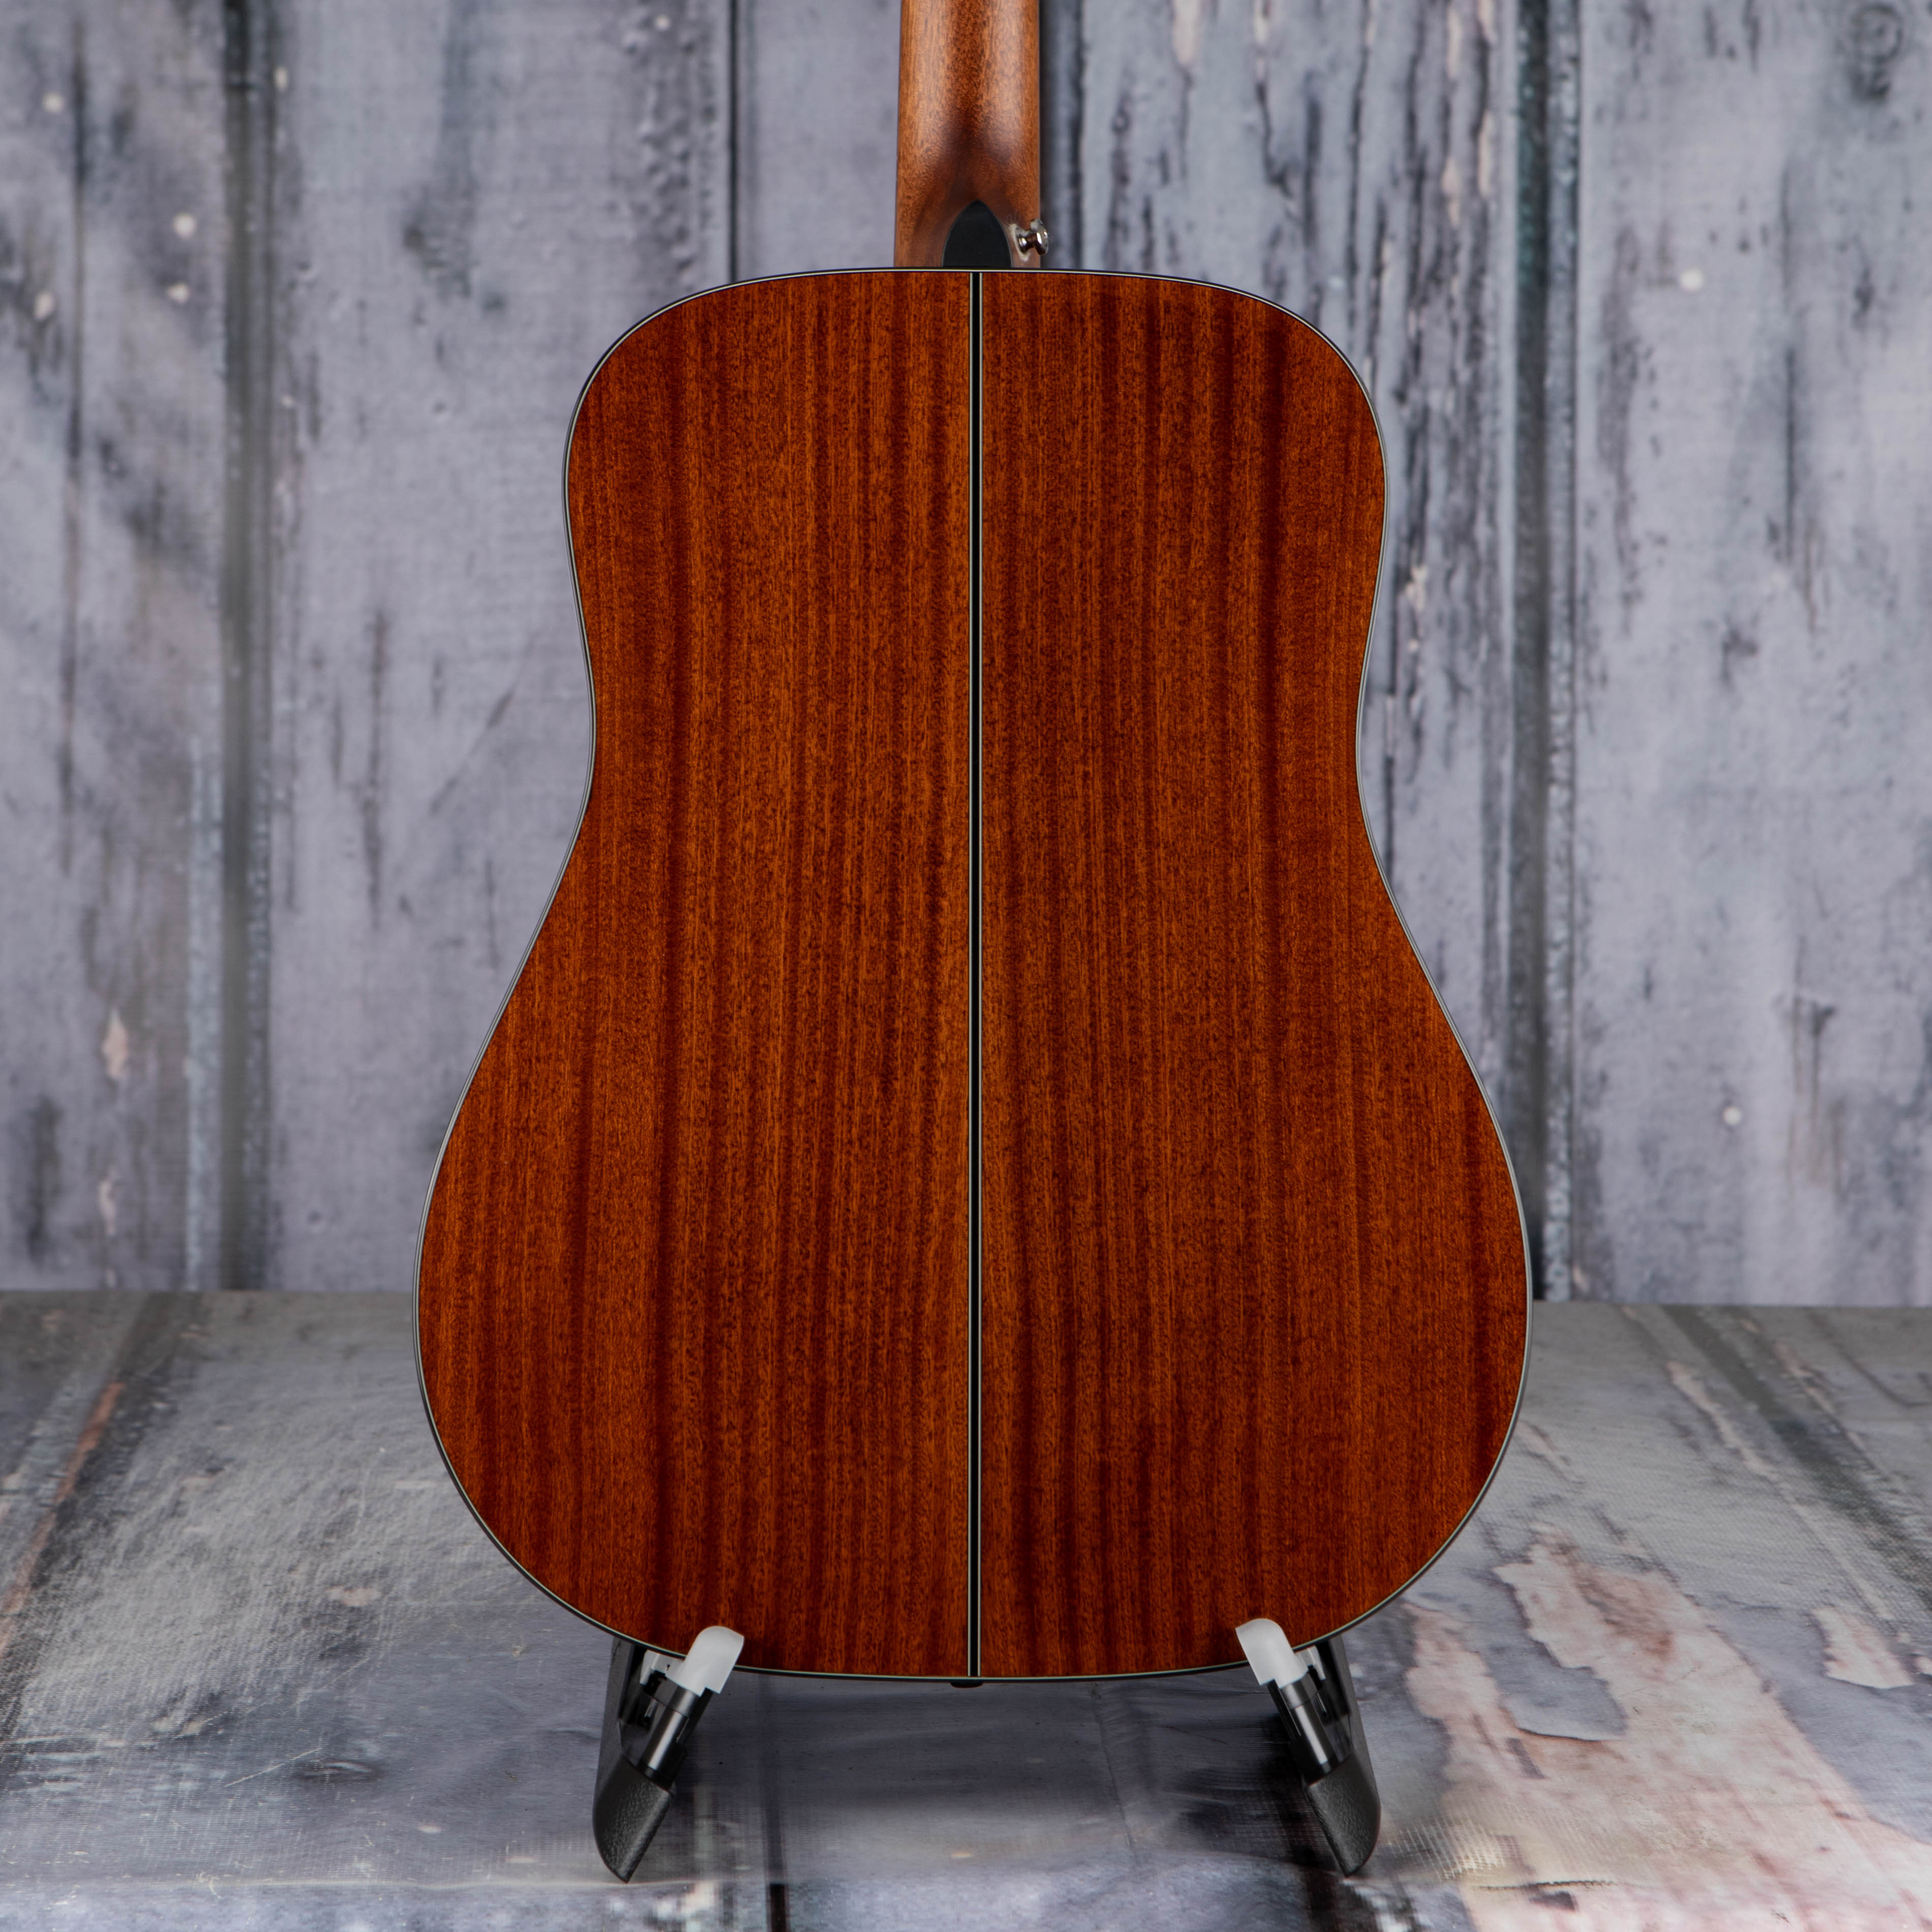 Takamine GD30-NAT Left-Handed Acoustic Guitar, Natural, back closeup